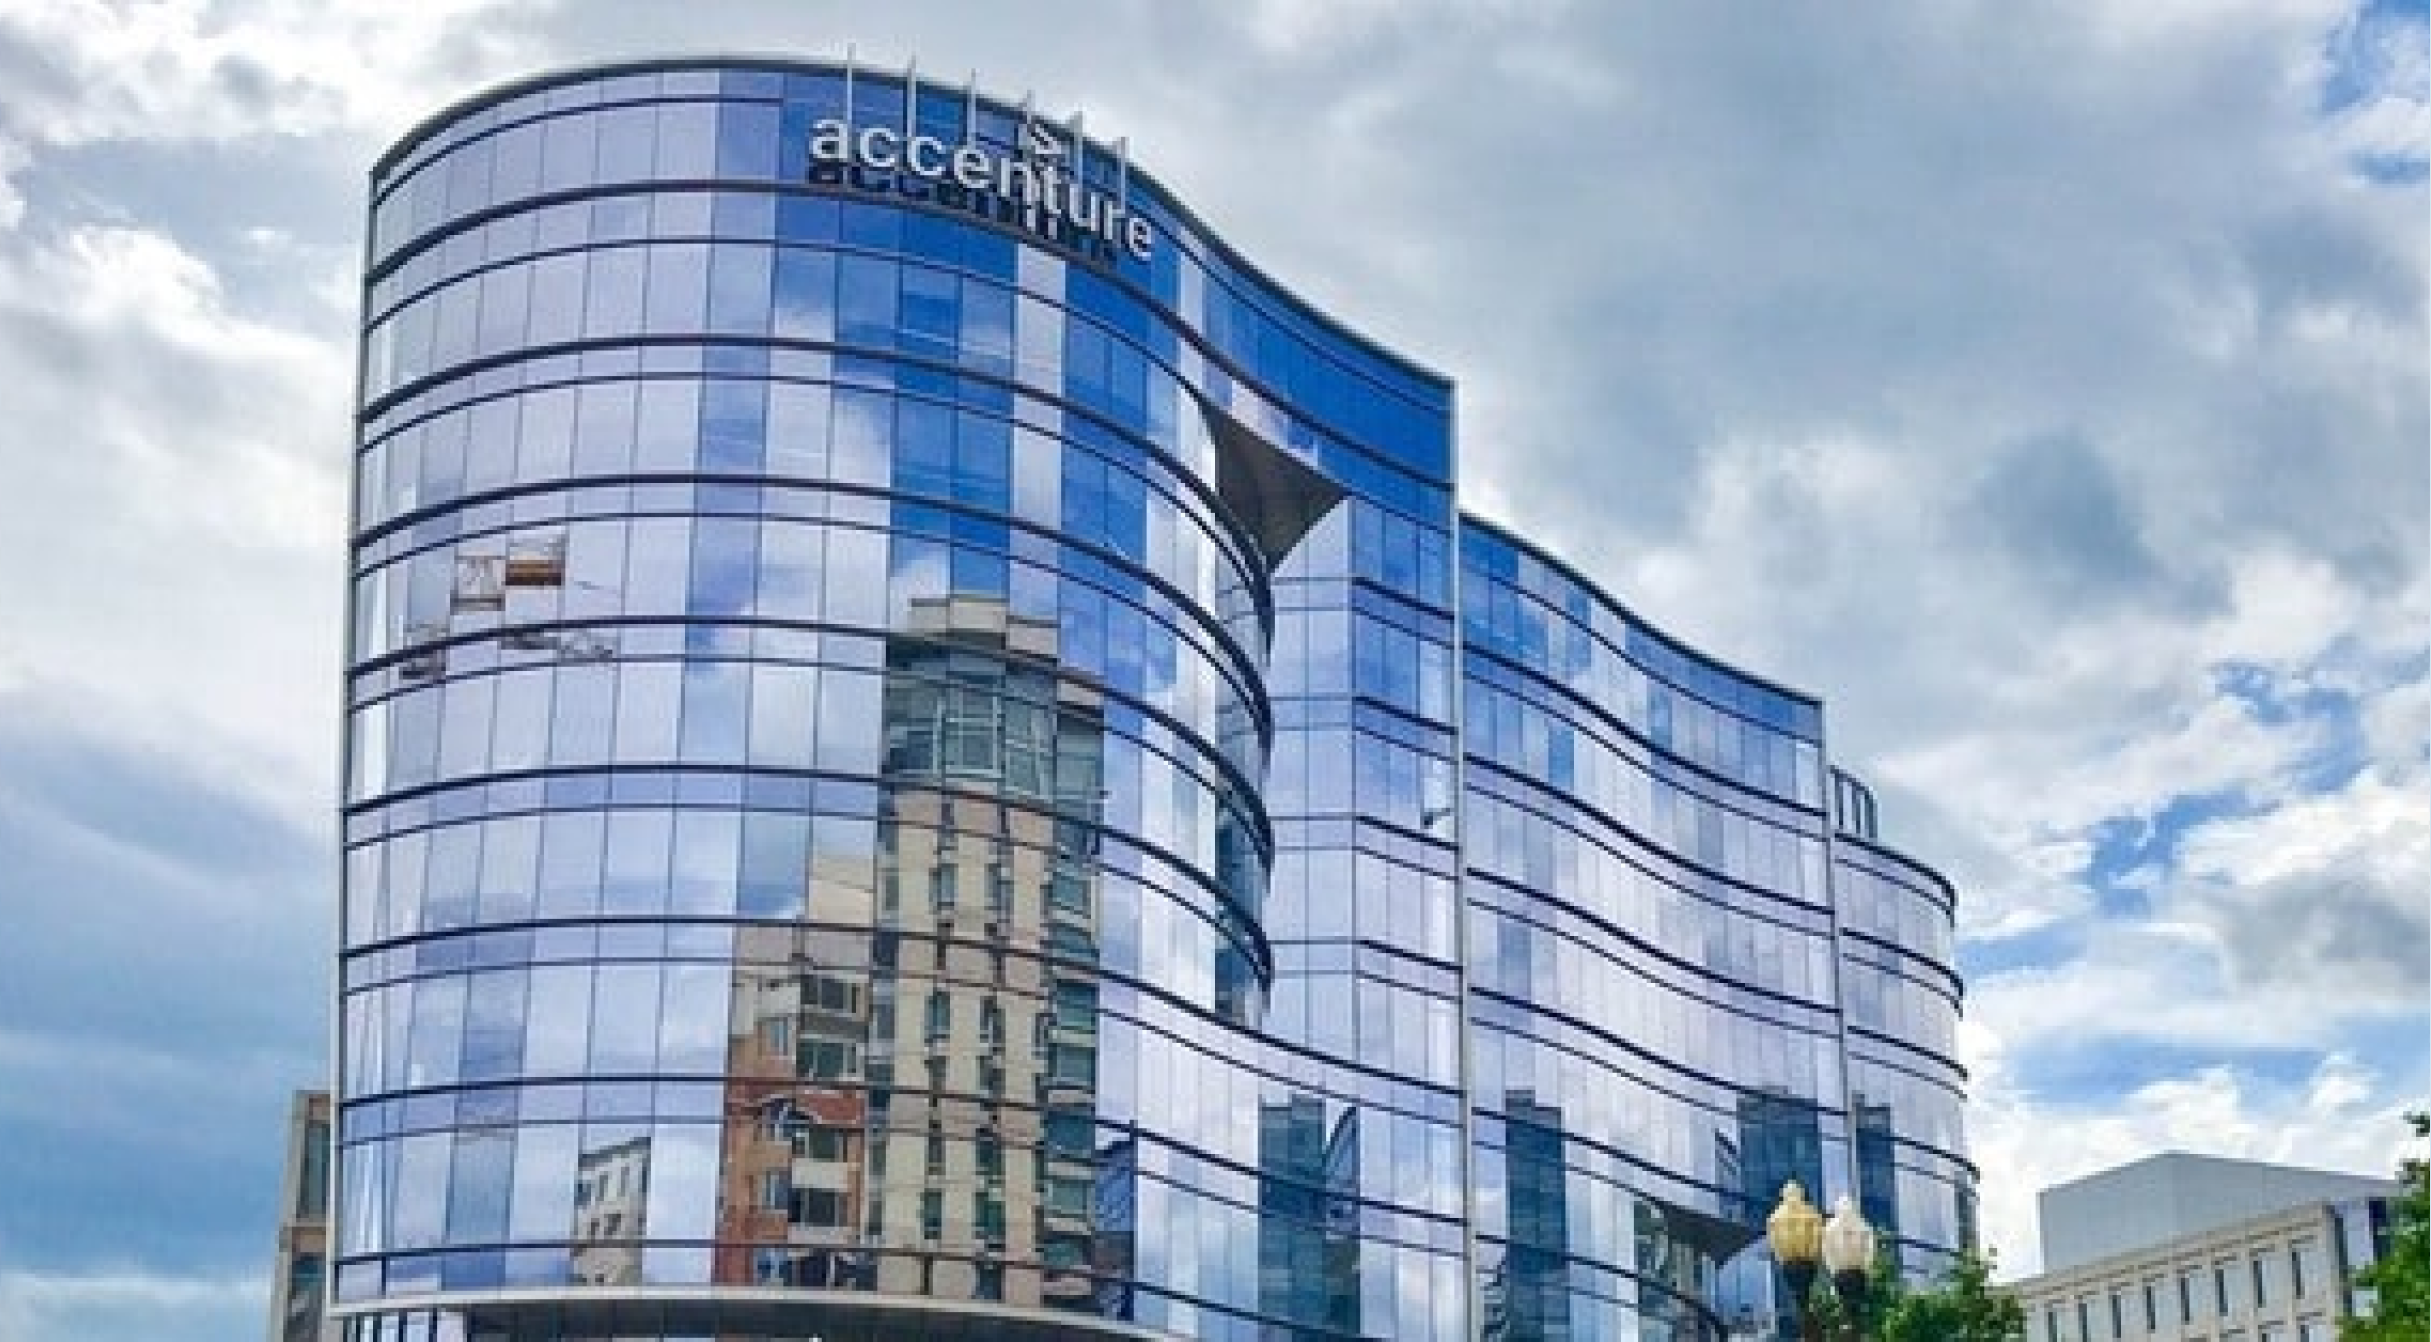 Image of Accenture headquarters building. 